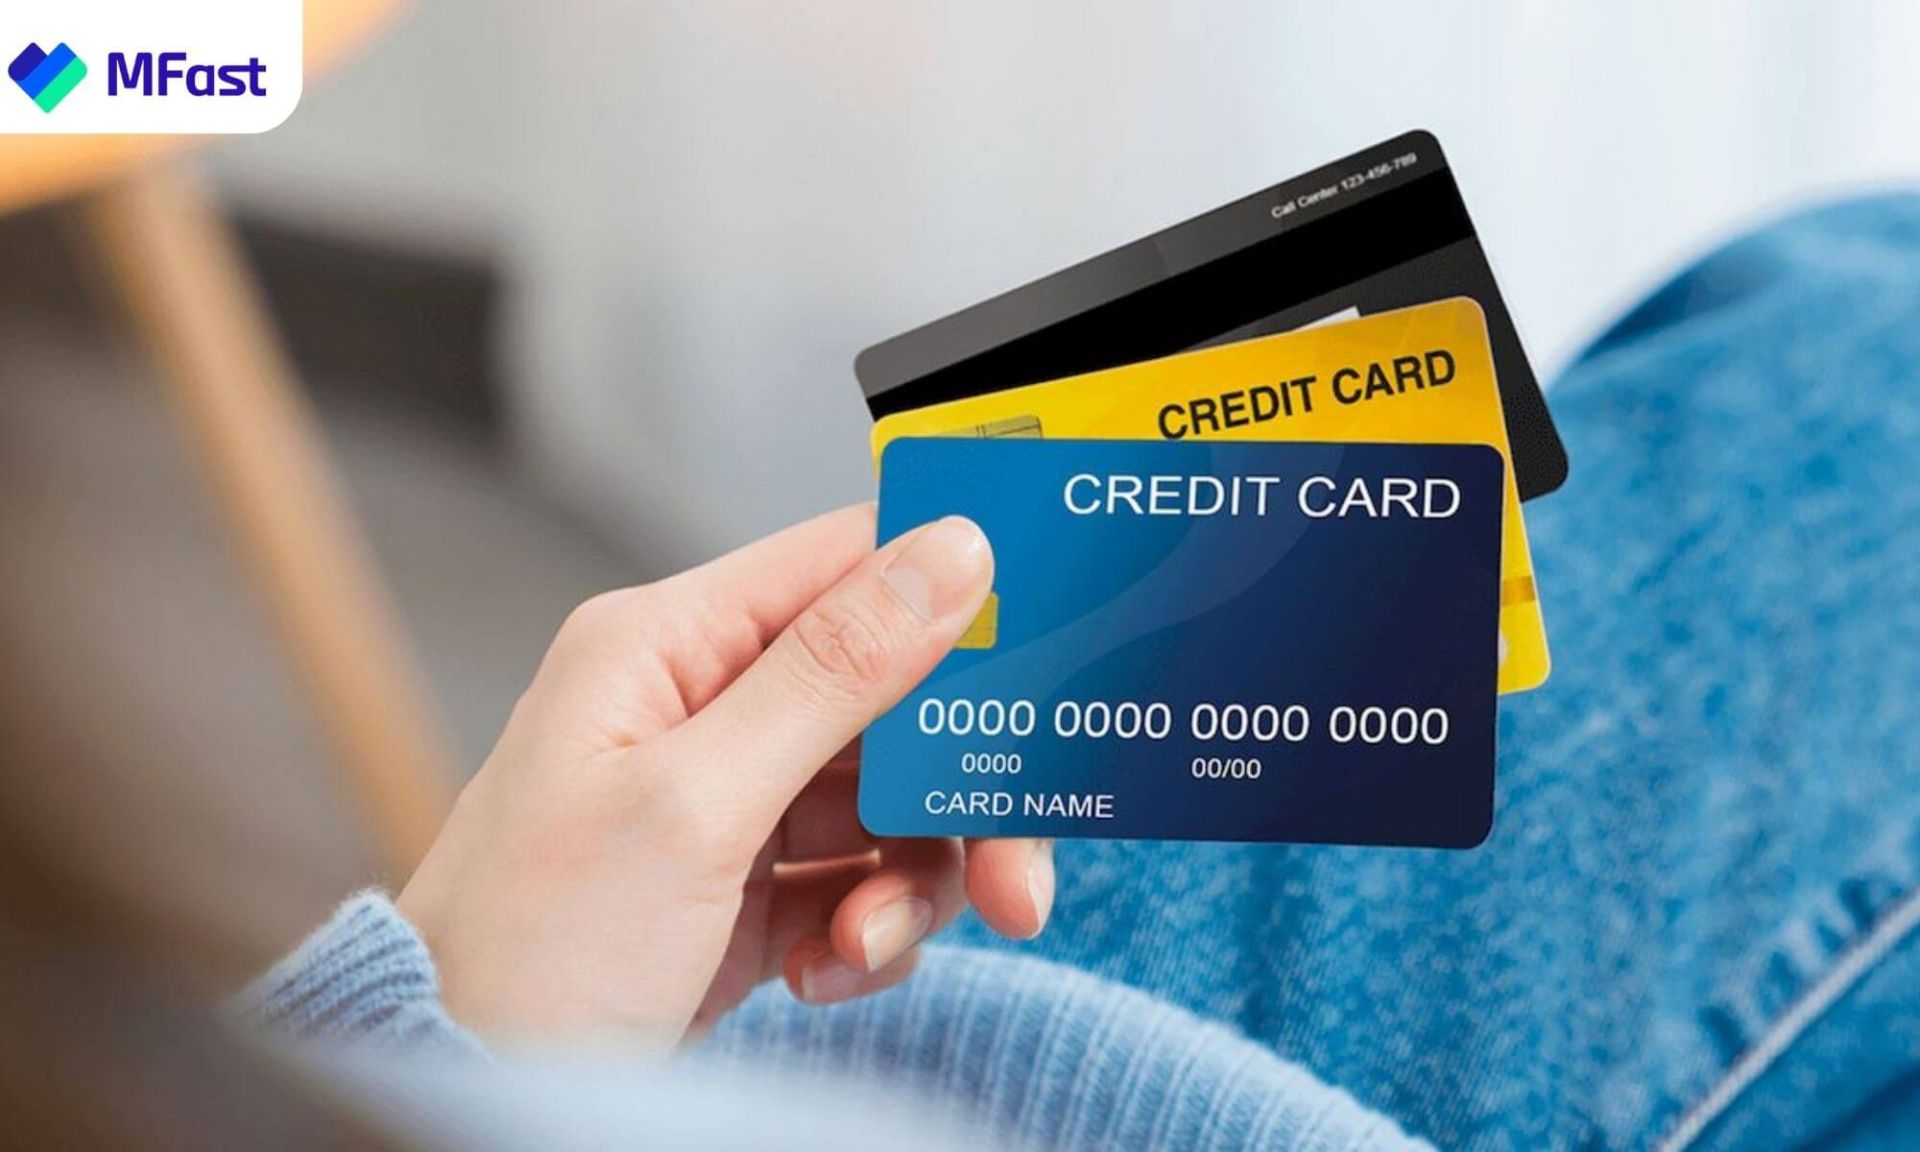 Thẻ tín dụng là dòng thẻ giúp bạn mua và thanh toán trước sau đó thanh toán lại với ngân hàng